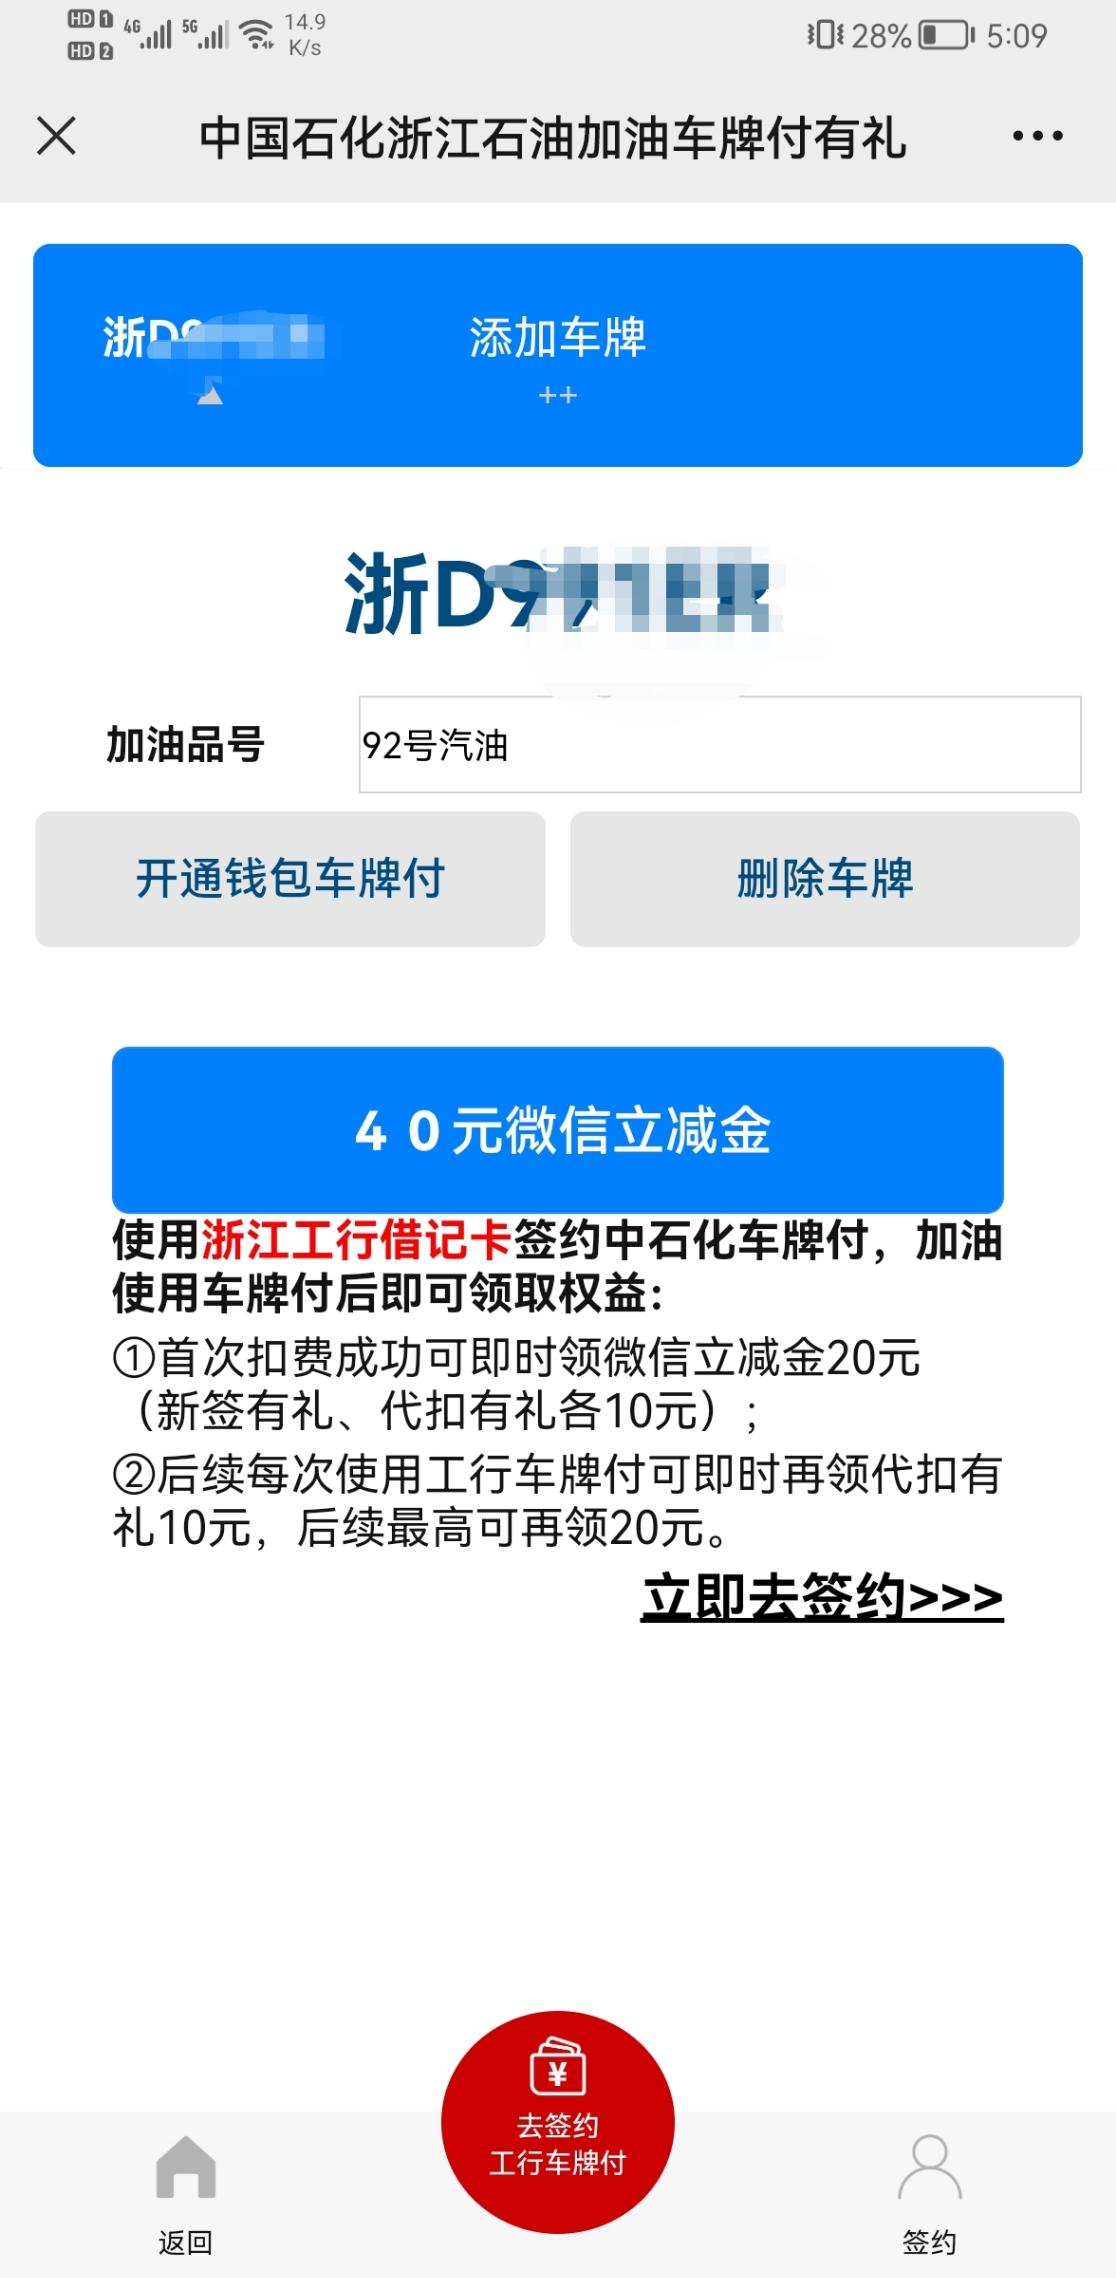 浙江中石化40毛-惠小助(52huixz.com)